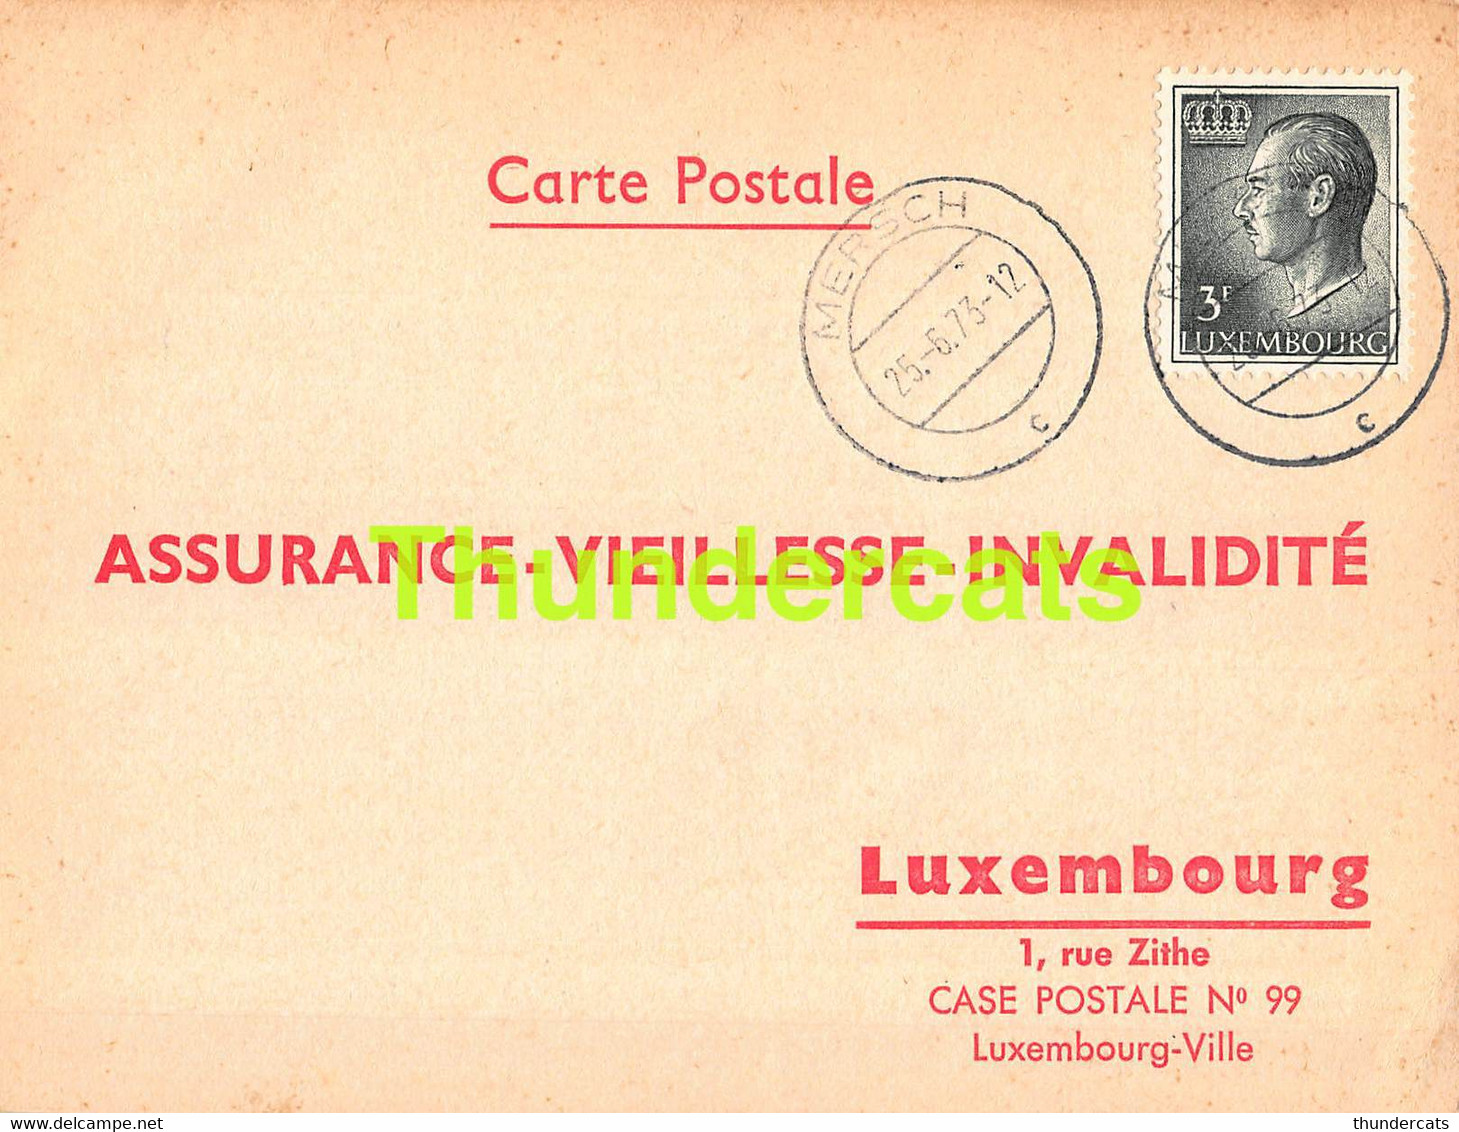 ASSURANCE VIEILLESSE INVALIDITE LUXEMBOURG 1973 MERSCH WEBER BIRNBAUM - Covers & Documents